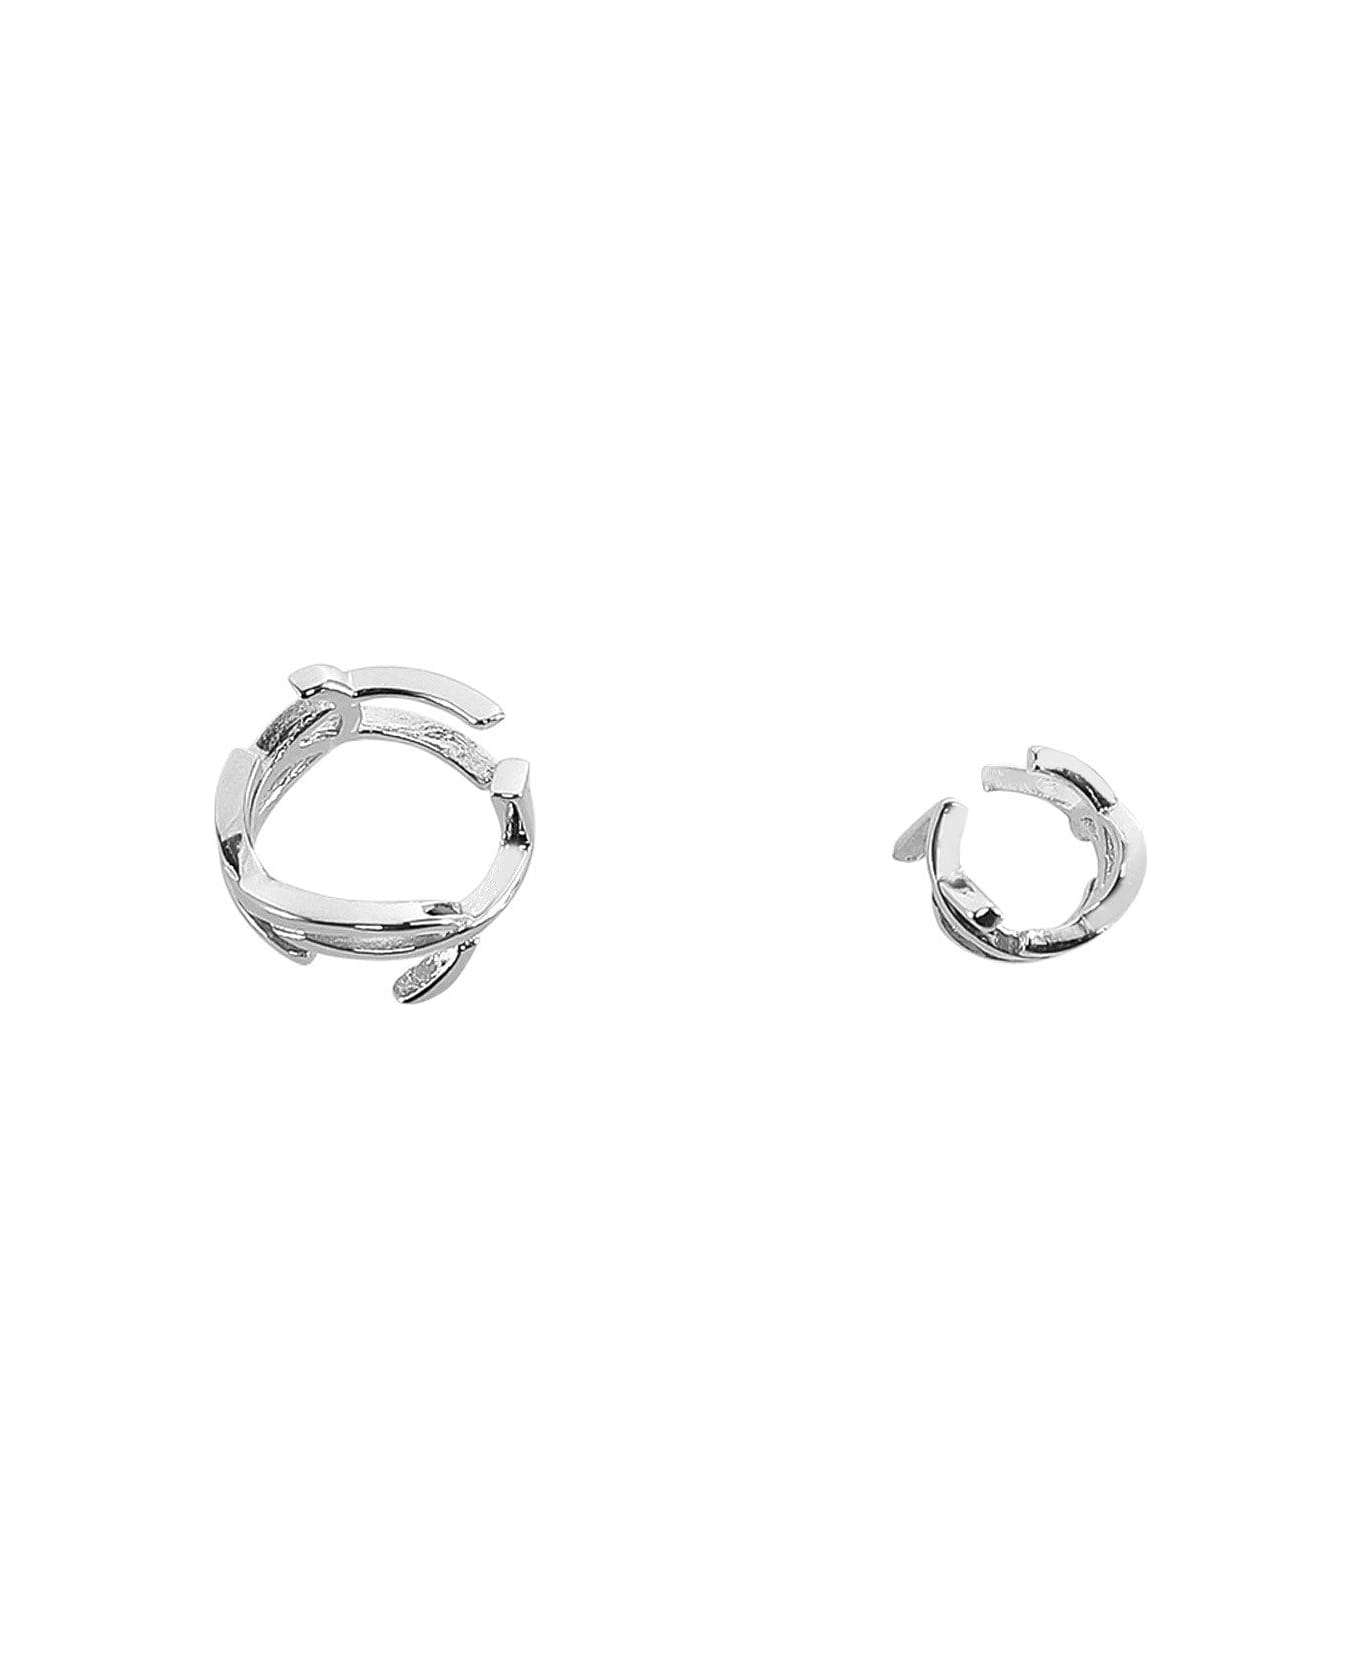 Saint Laurent Asymmetrical Curb Chain Earrings